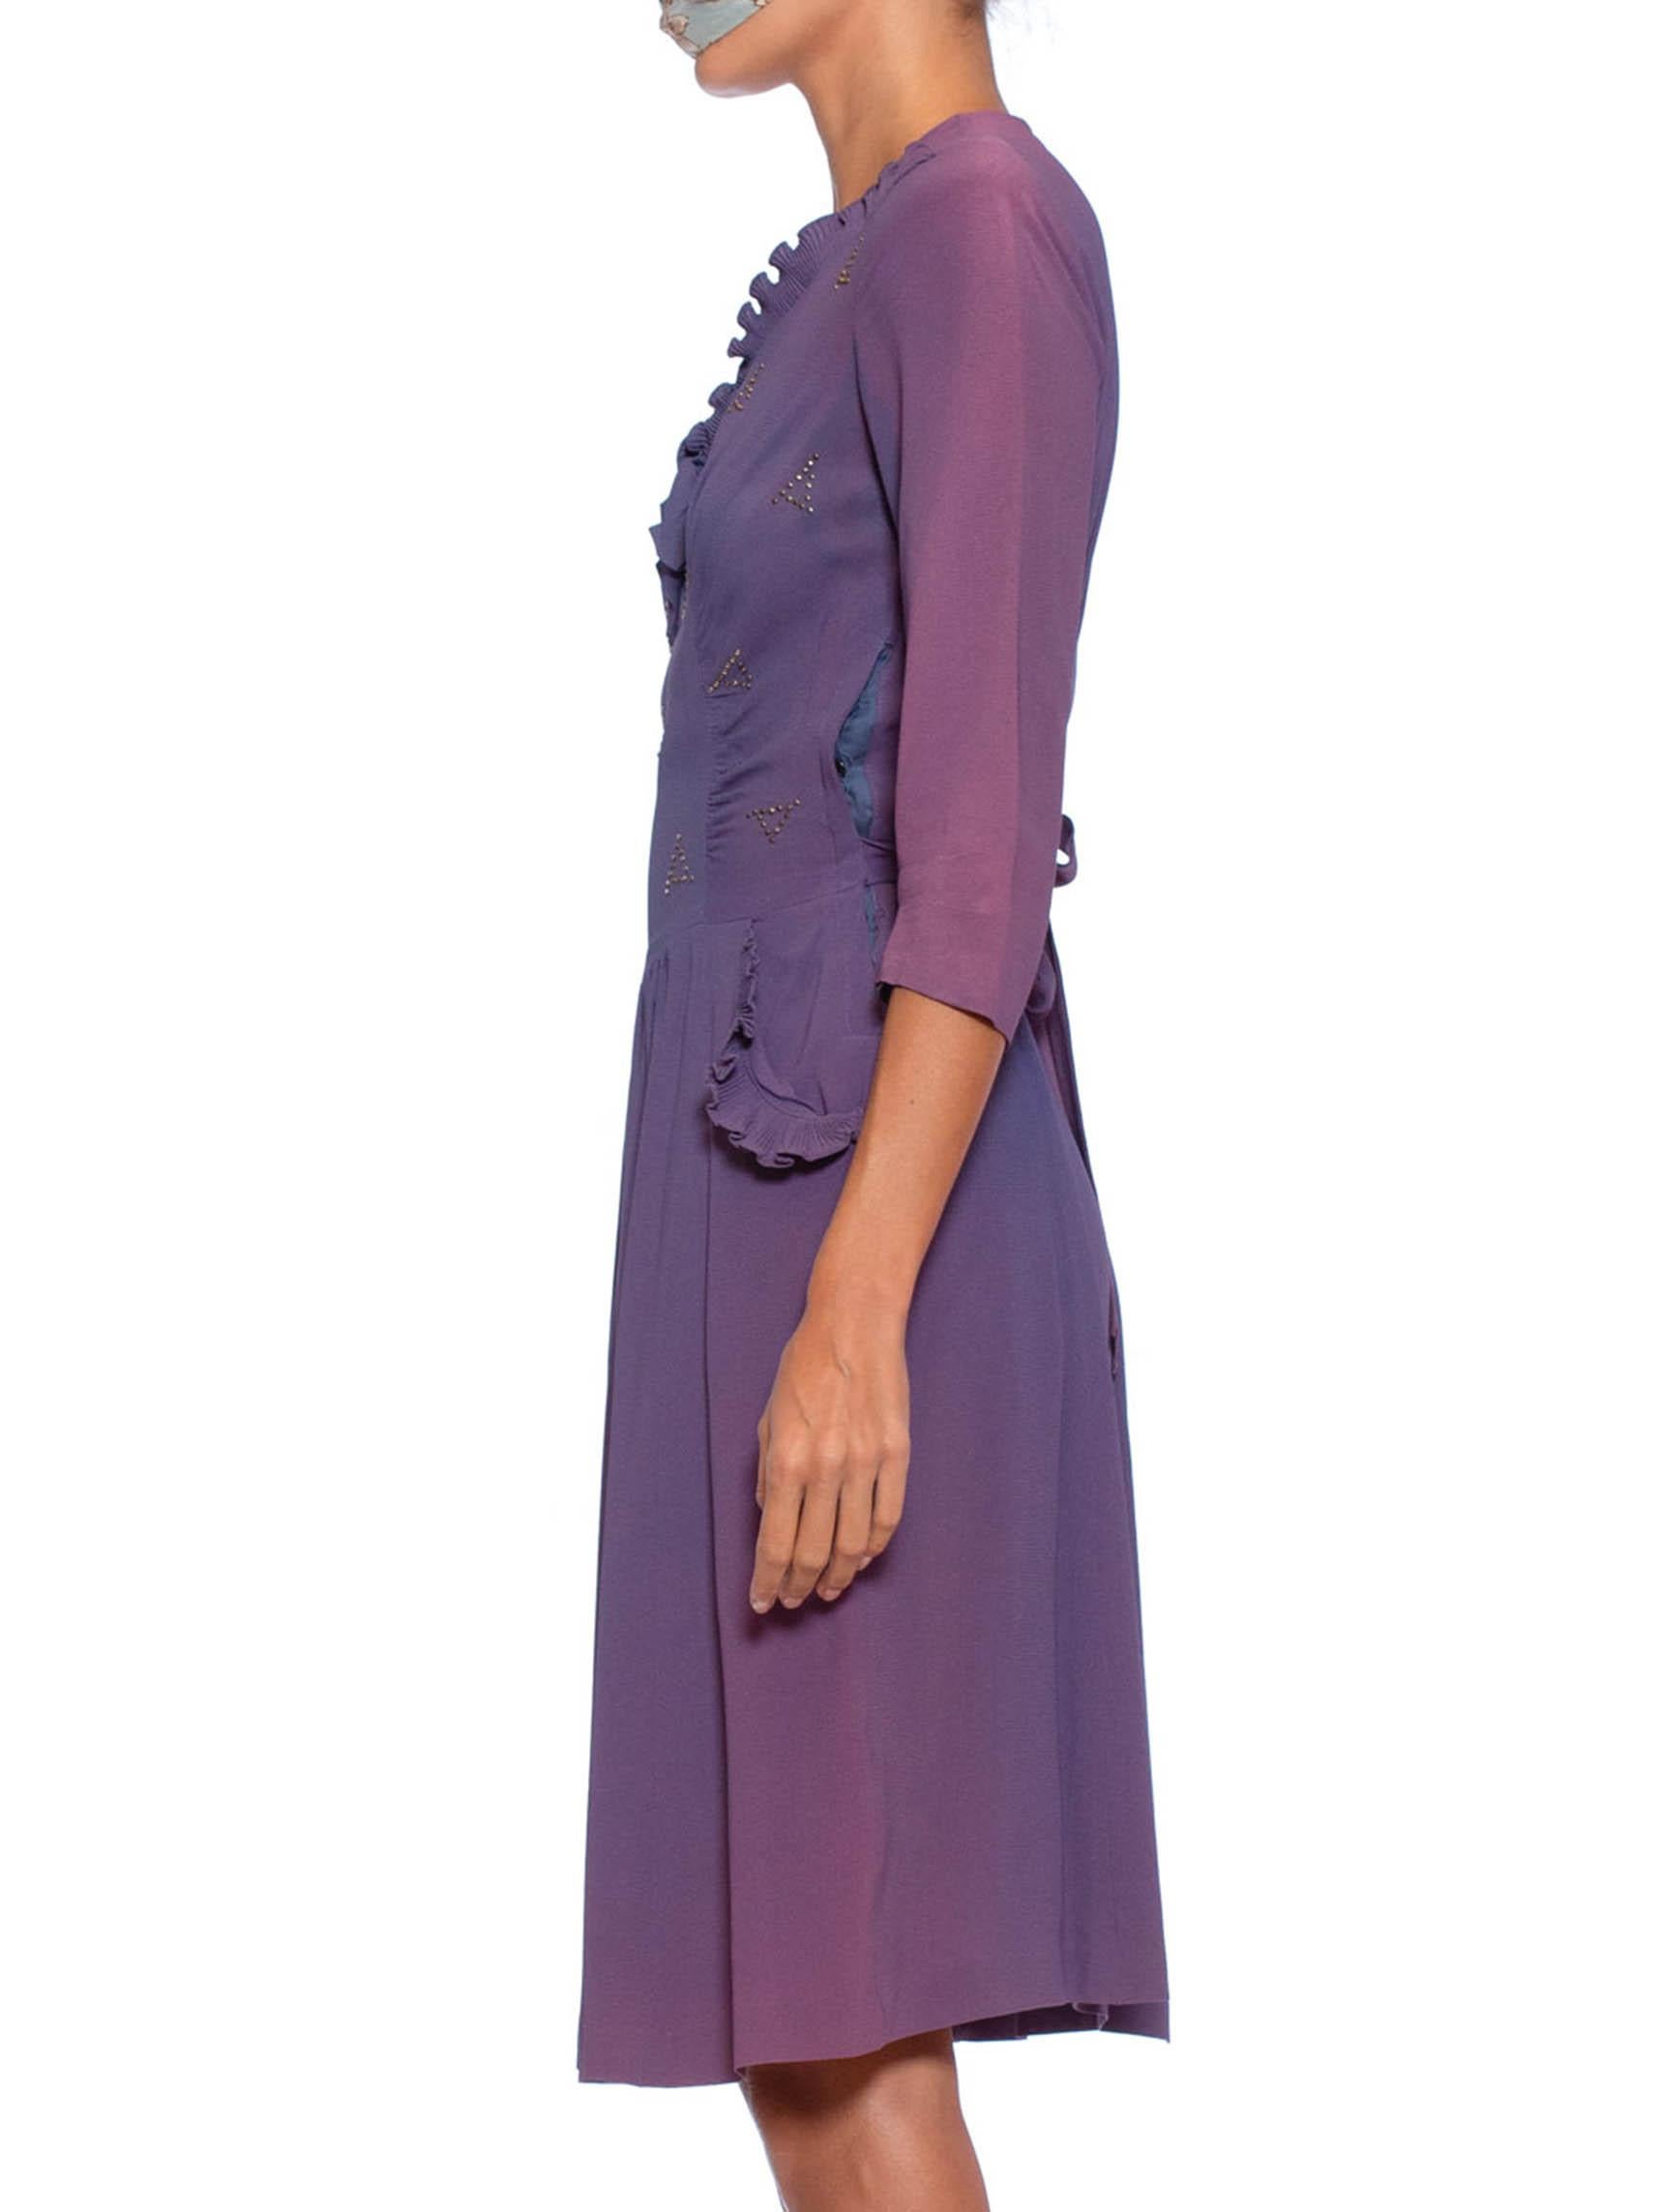 1940s purple dress